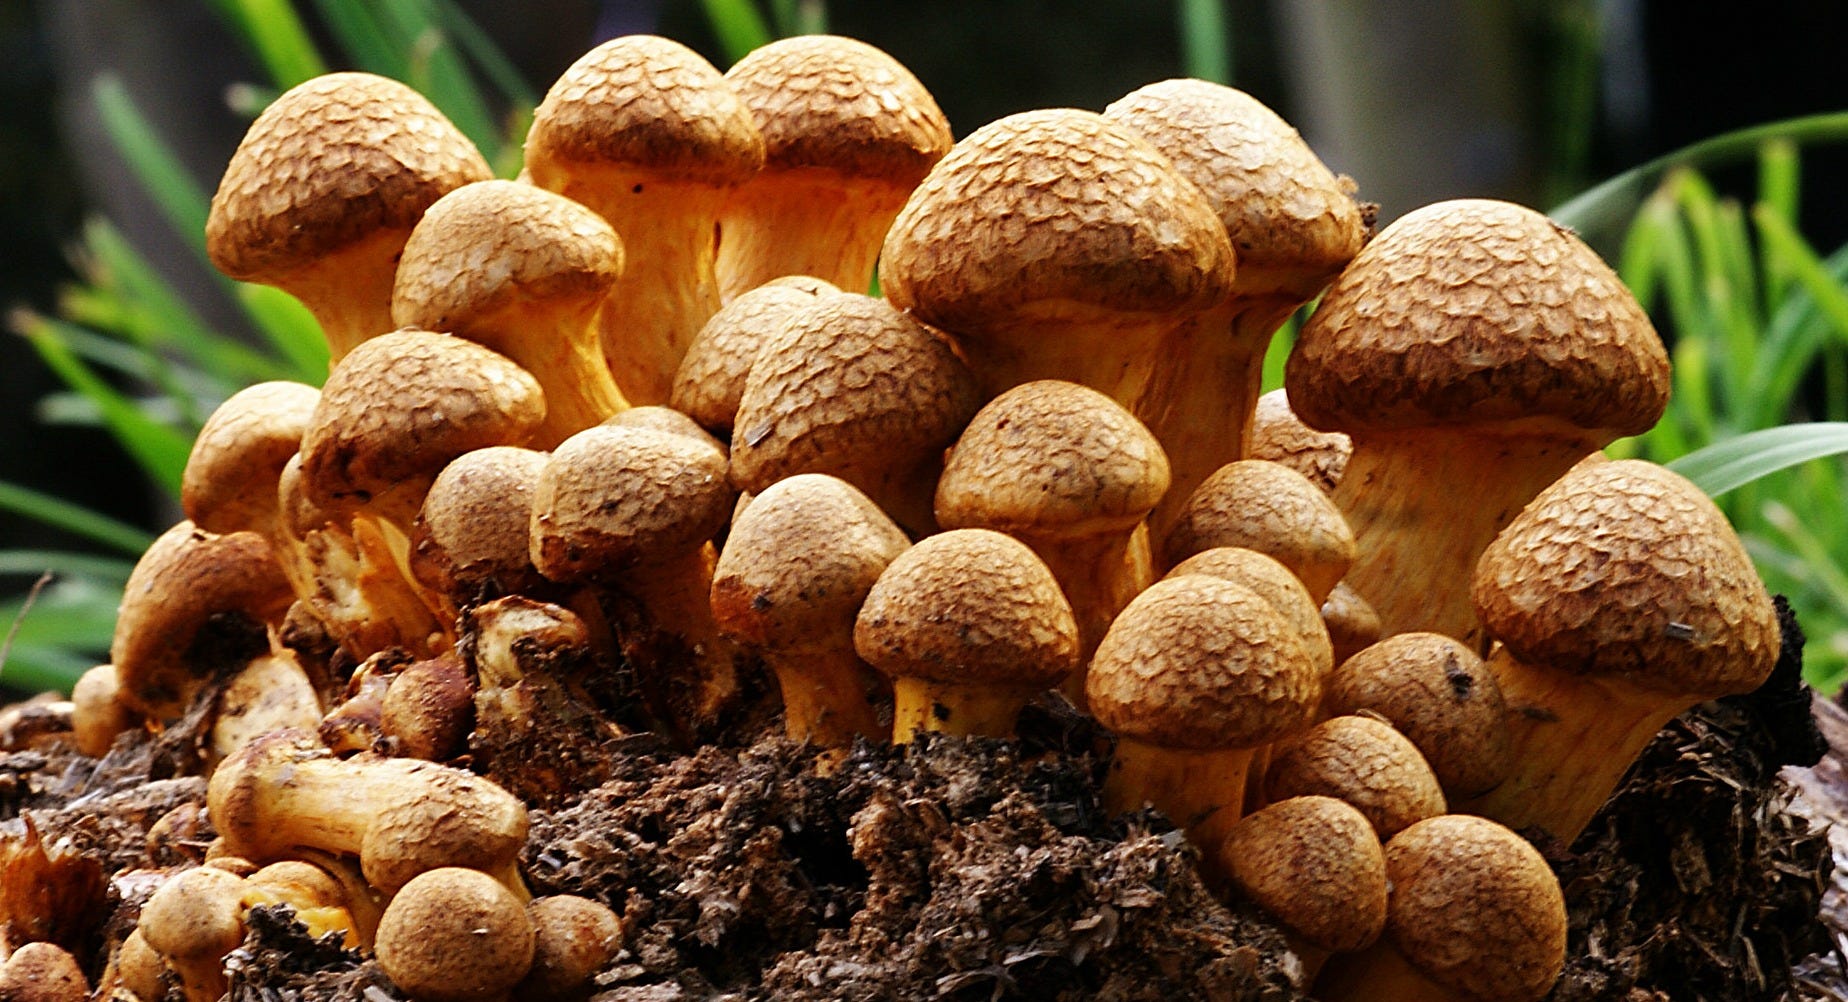 mushrooms ile ilgili görsel sonucu